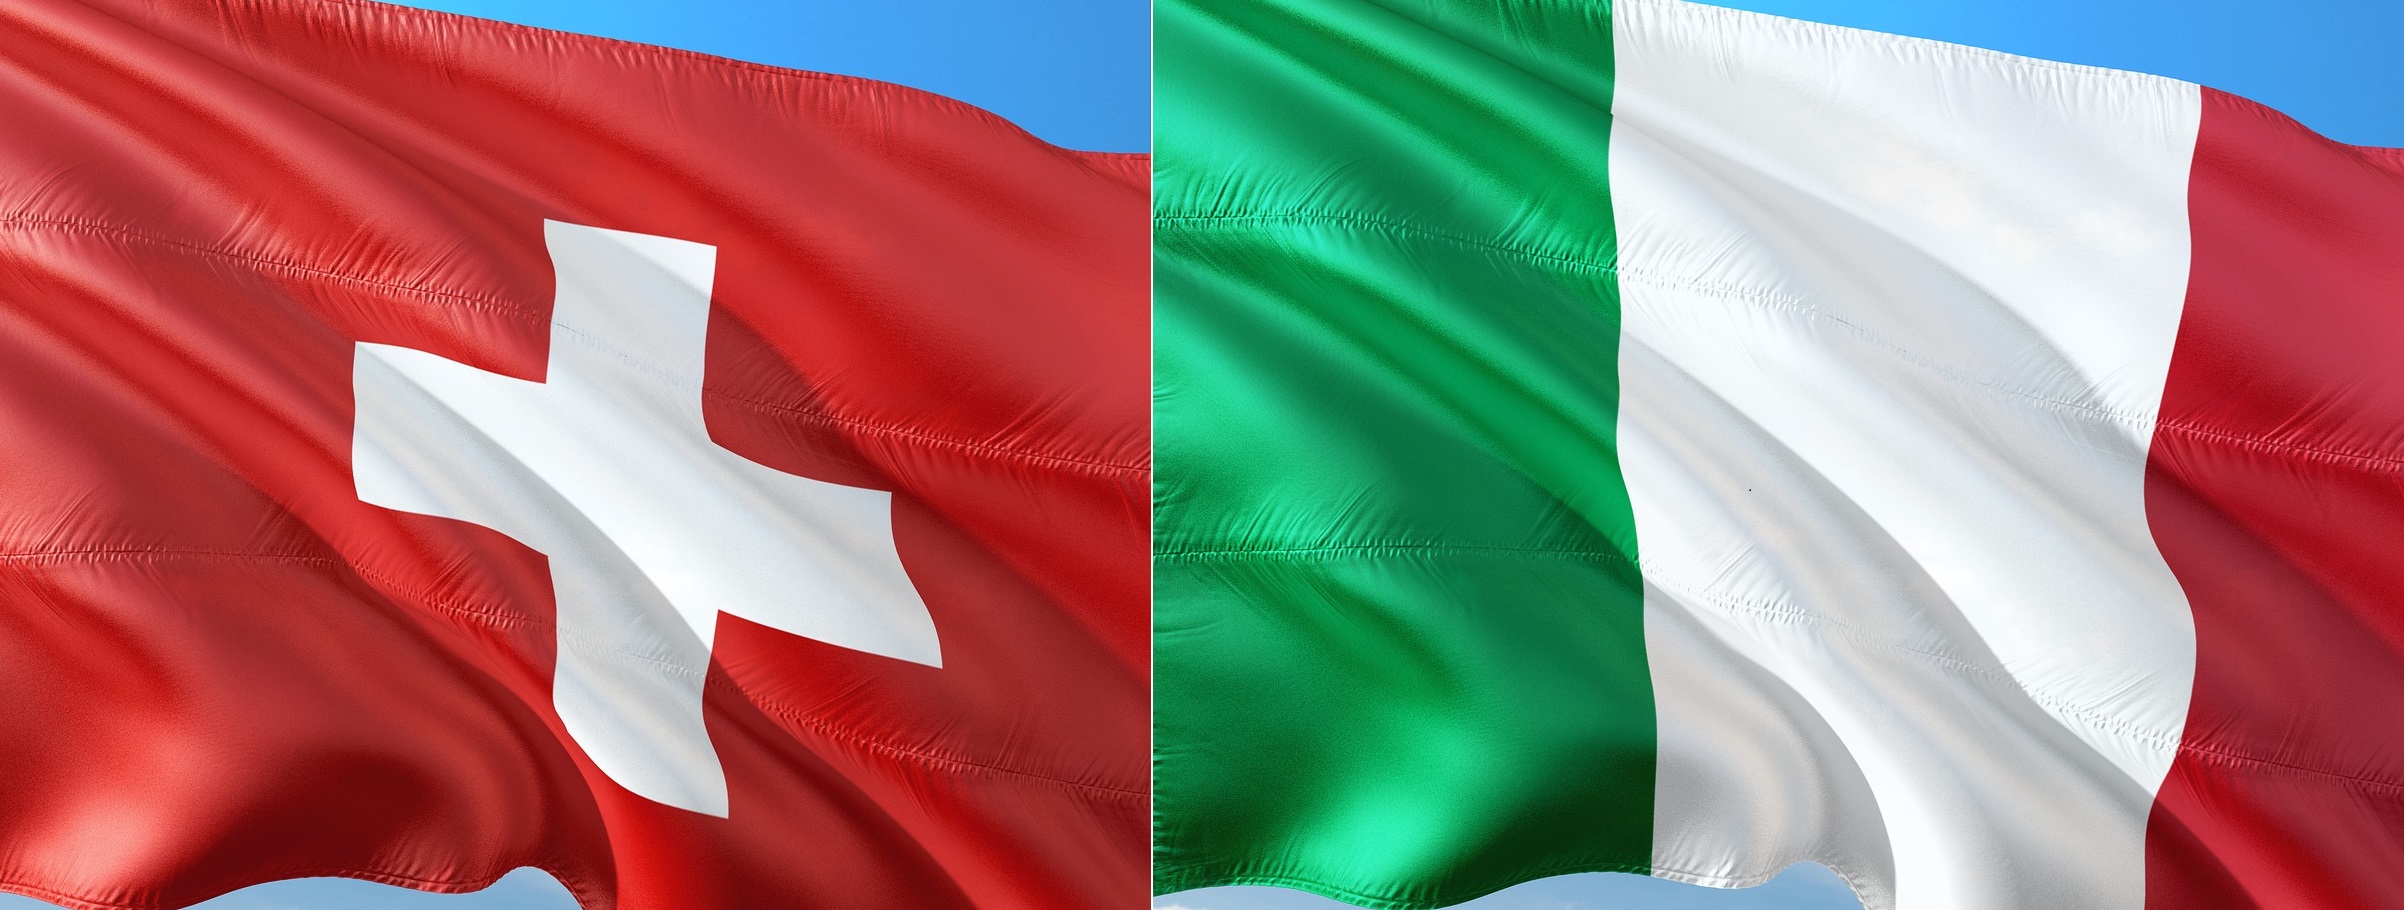 Svizzera-Italia, quali relazioni economiche? - Cc-Ti